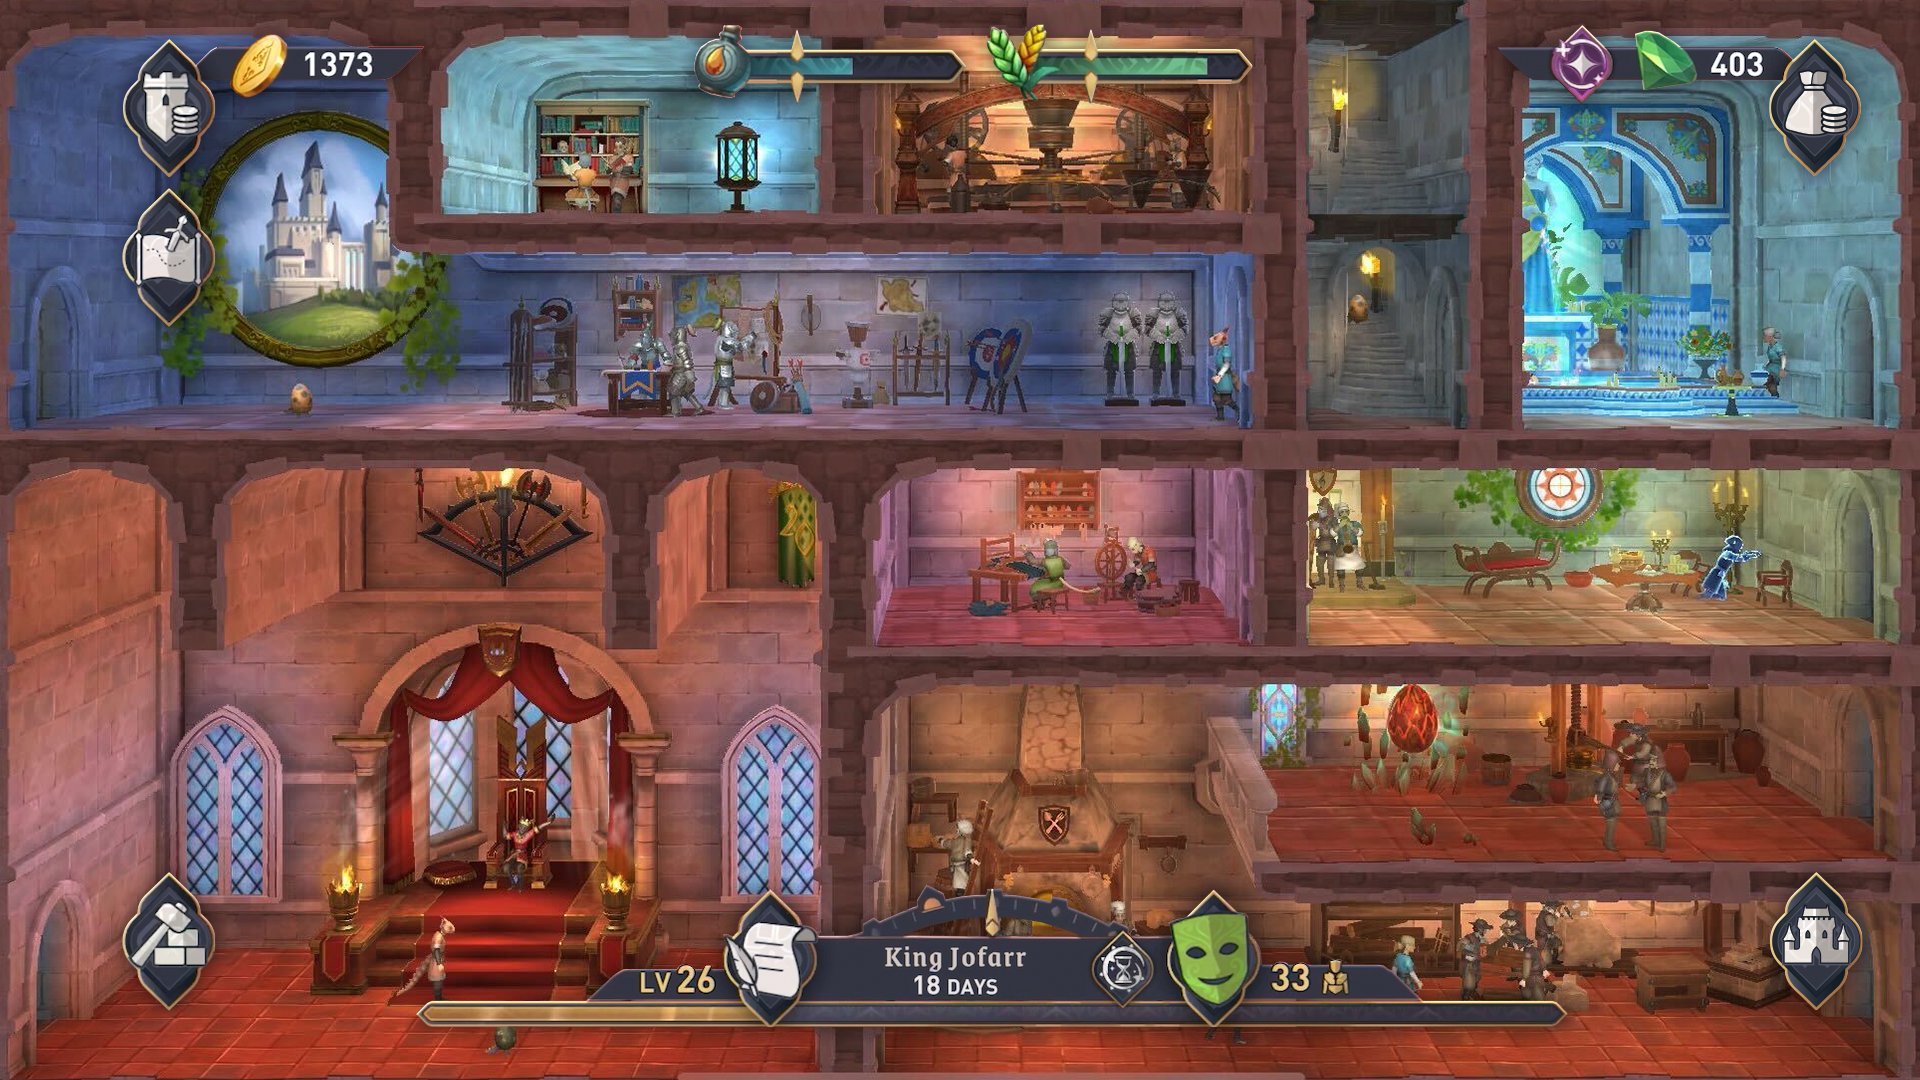 Bethesda Surprises Fans: The Elder Scrolls: Castles Mobile Game Emerges